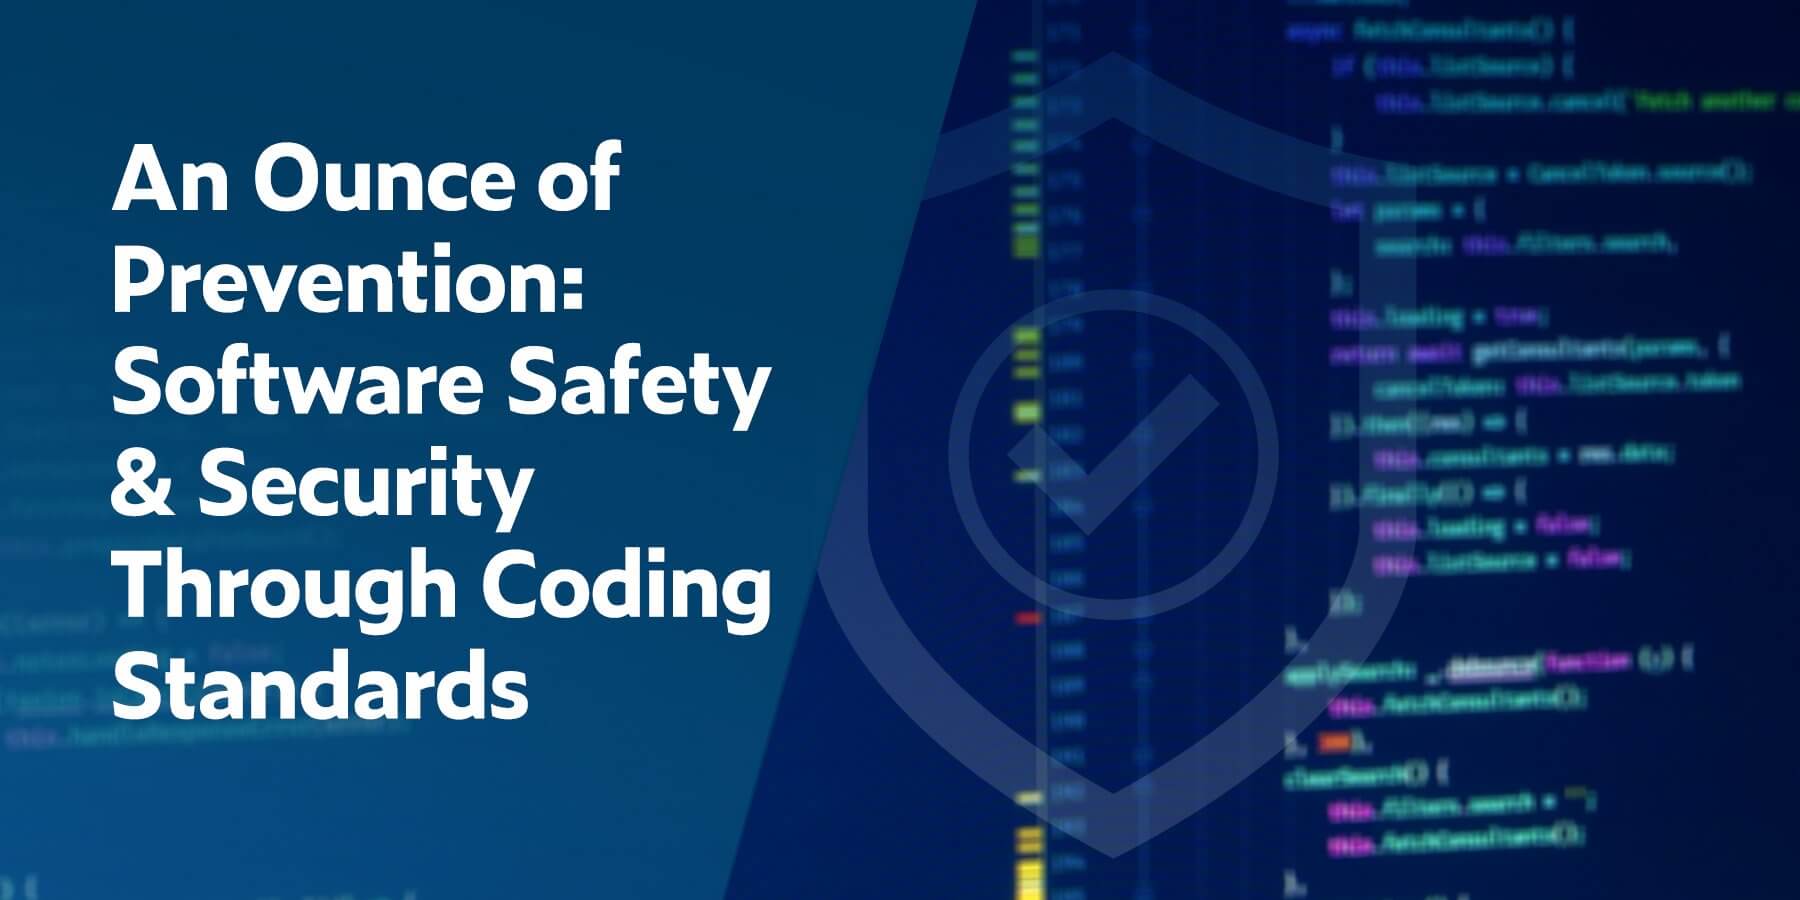 Una onza de prevención: seguridad y protección a través de estándares de codificación de software